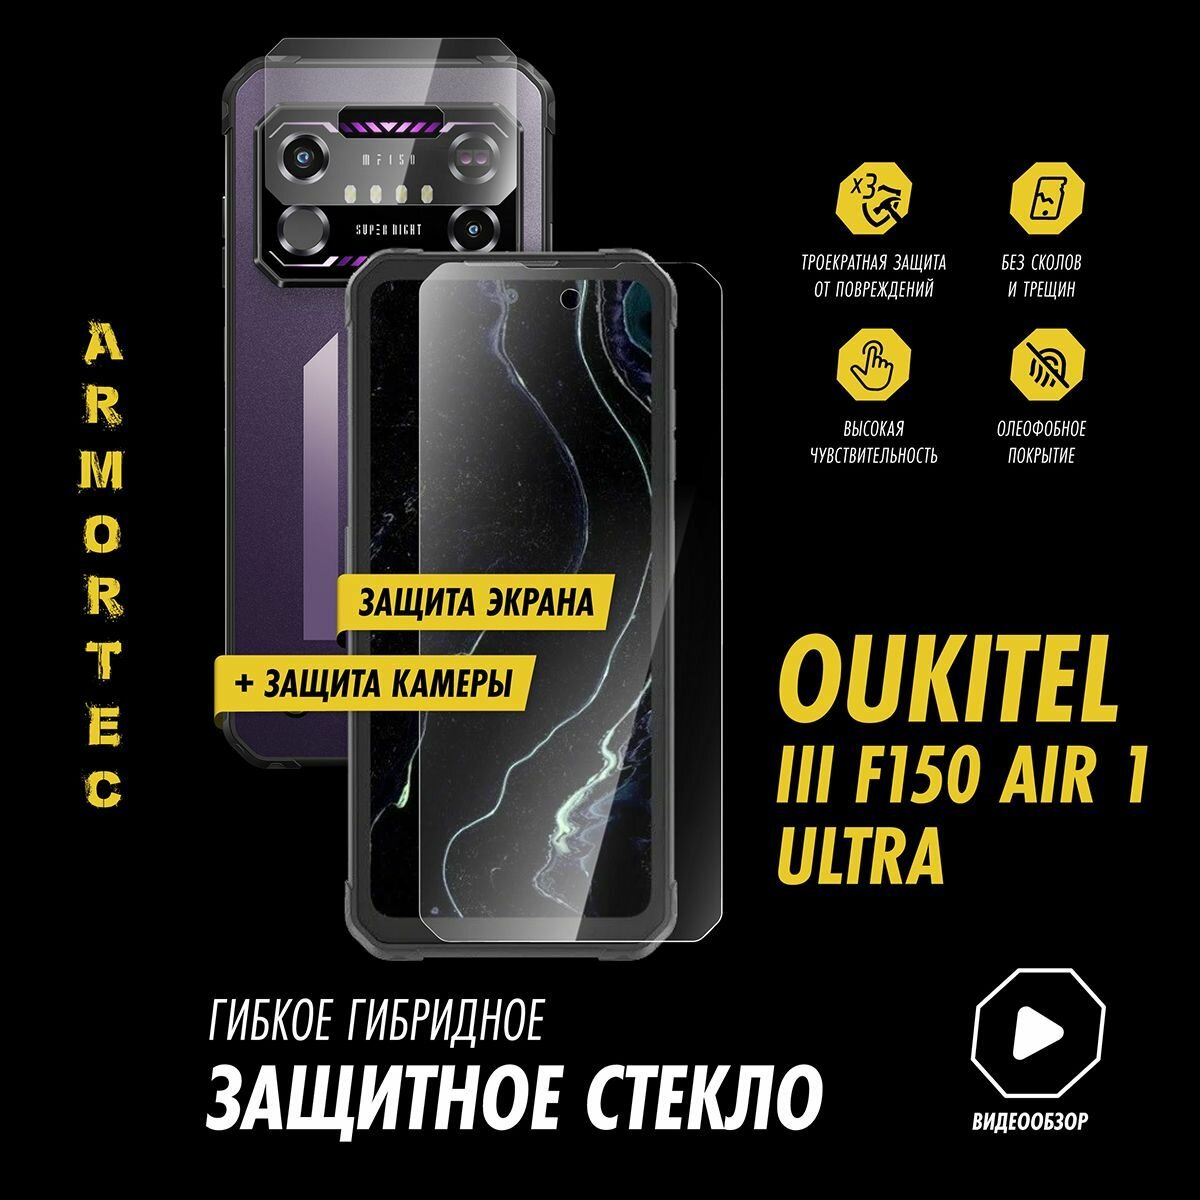 Защитное стекло на Oukitel IIIF150 Air 1 Ultra экран + камера гибридное ARMORTEC